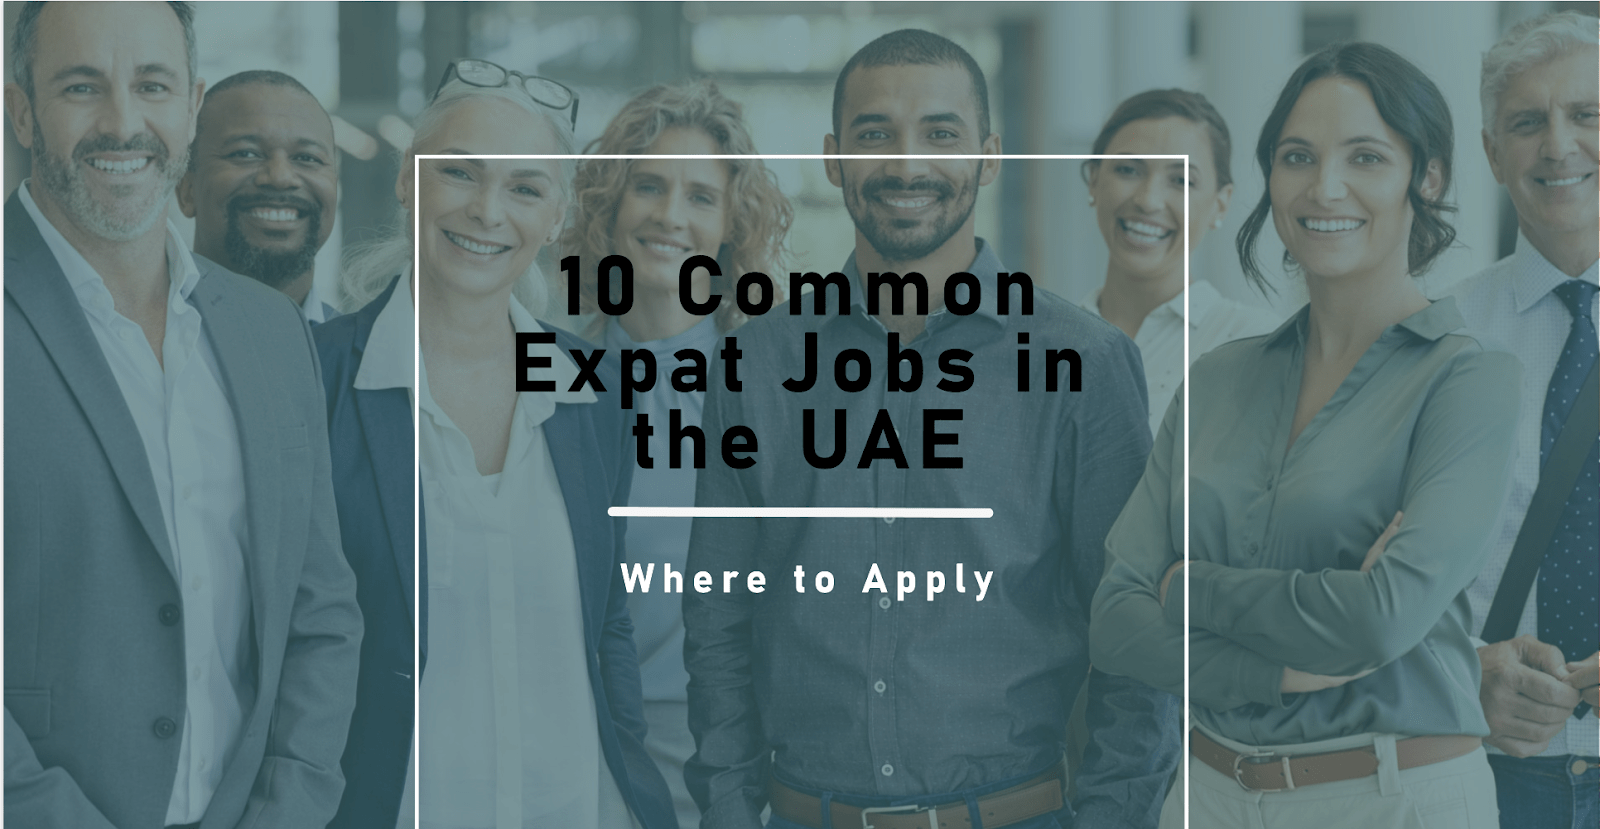 Expat Jobs in the UAE